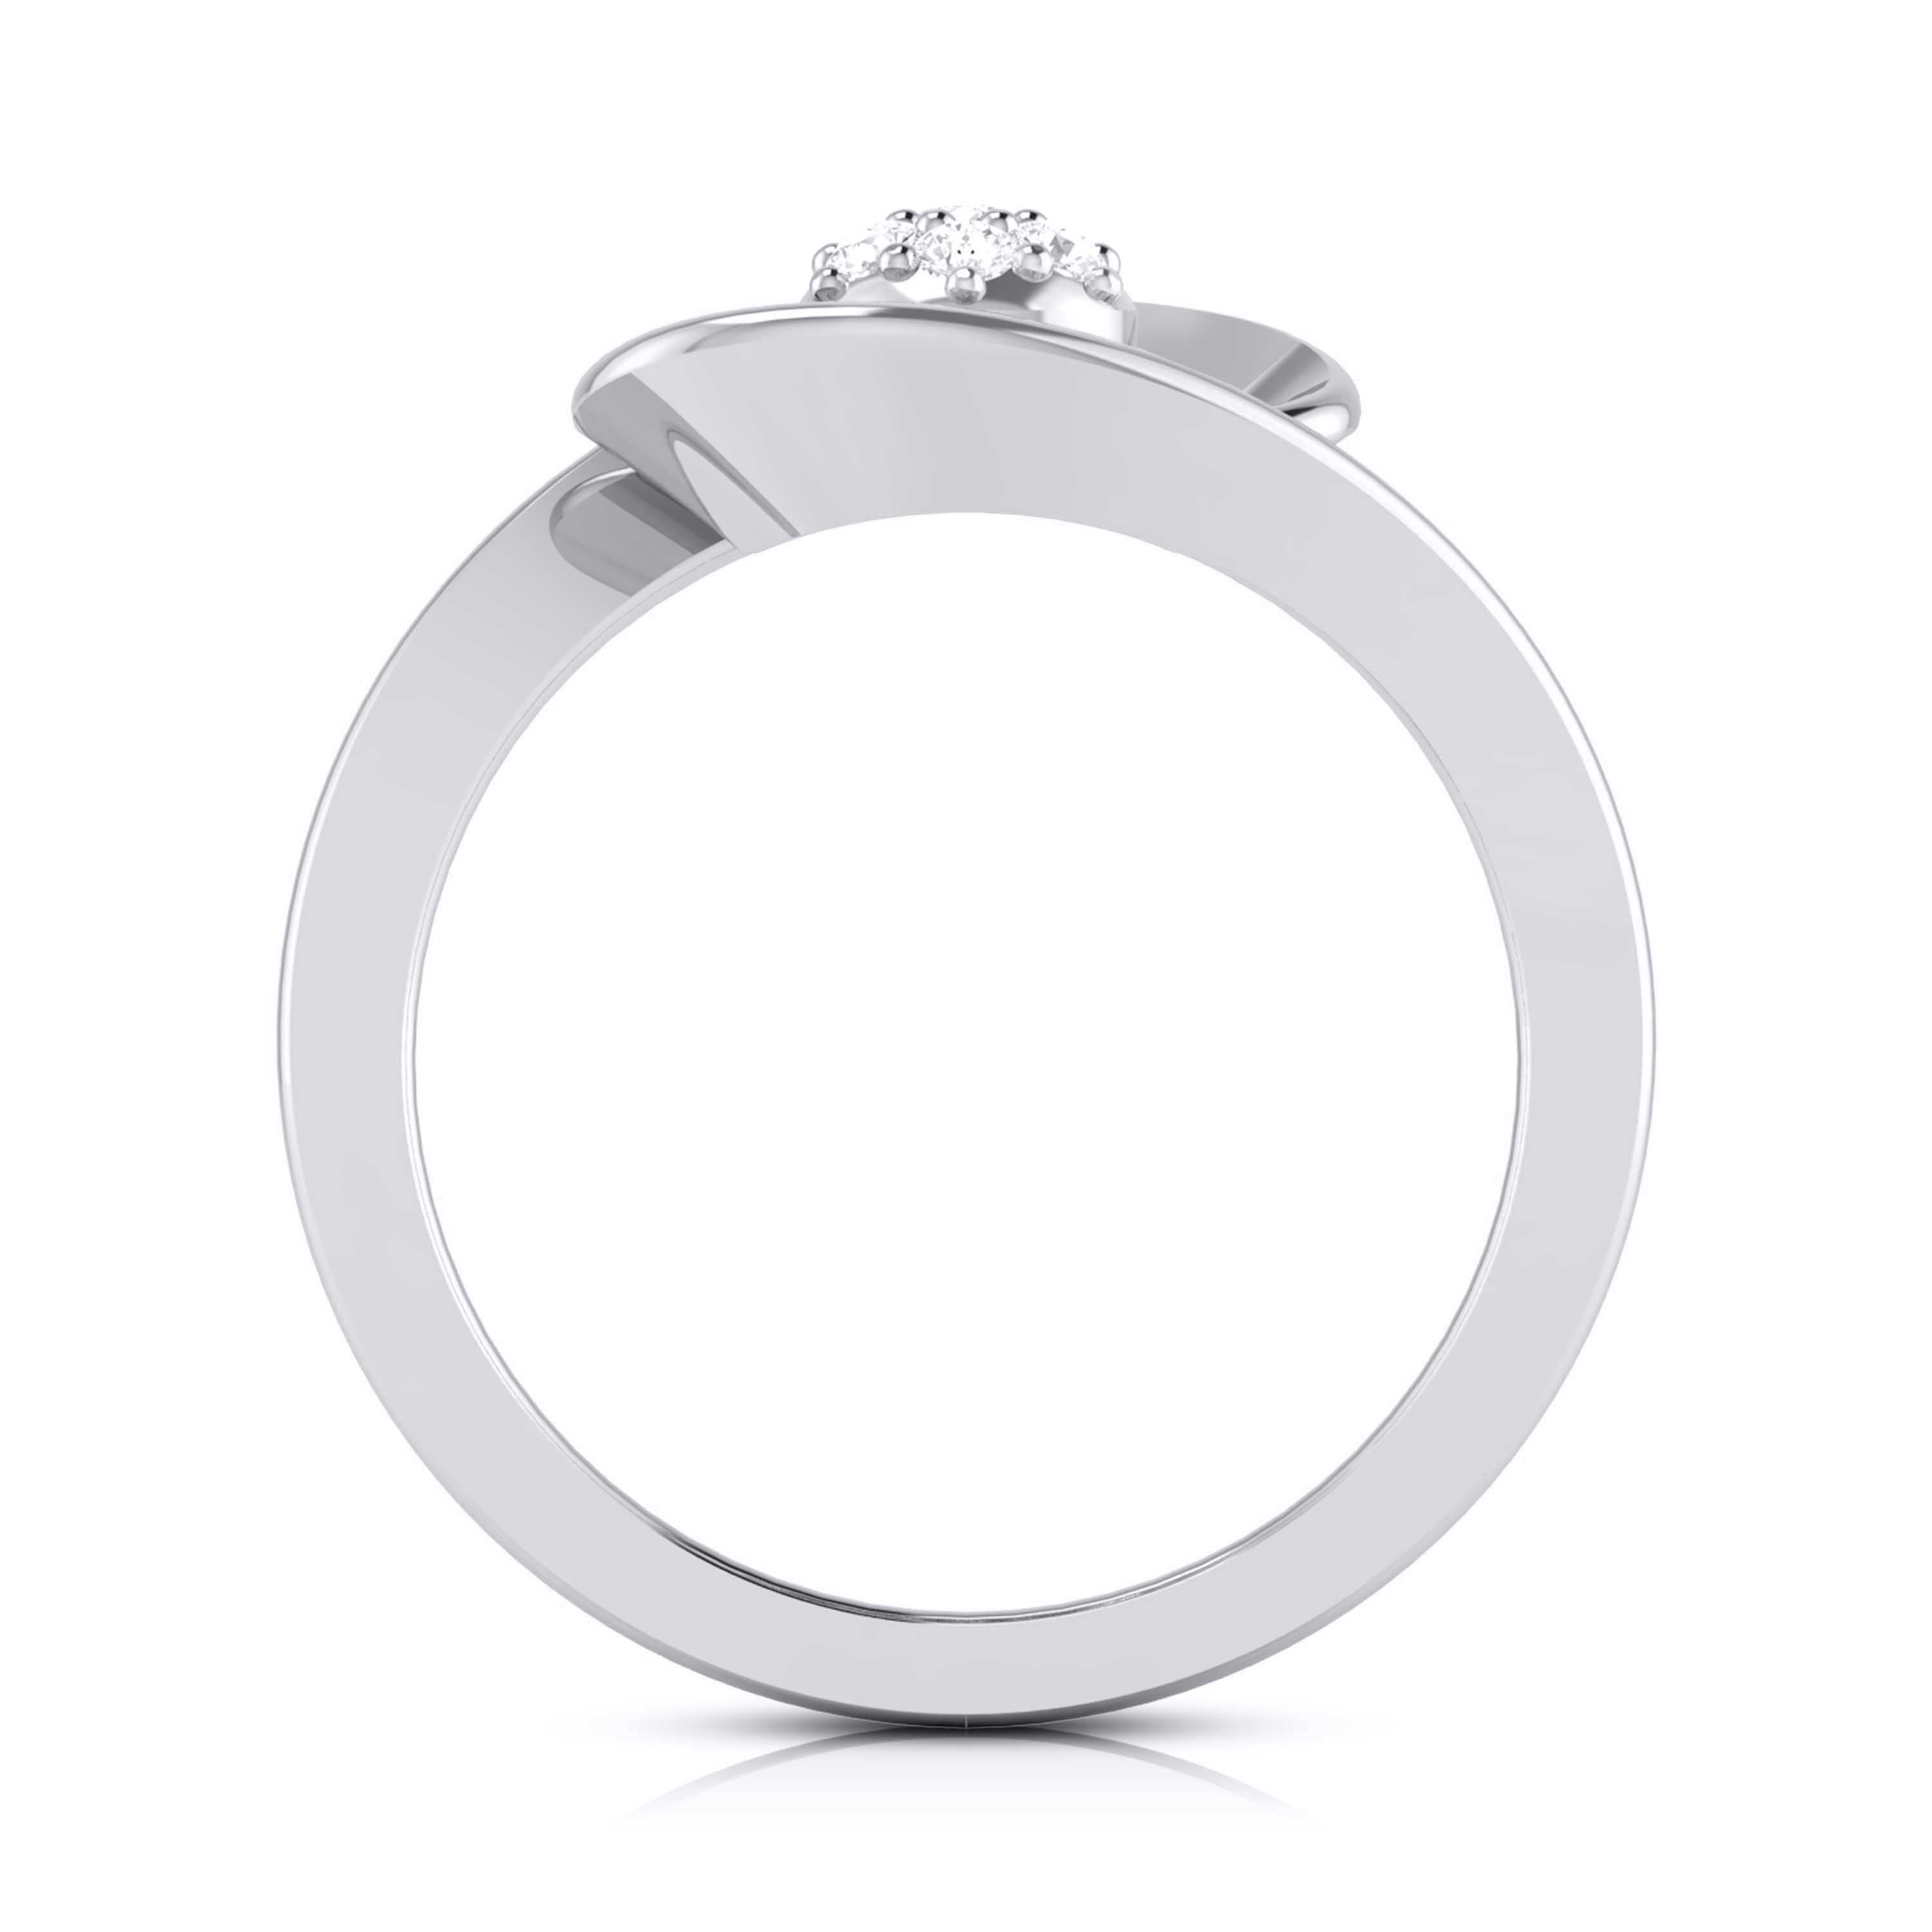 Platinum Diamond Ring for Women JL PT LR 149